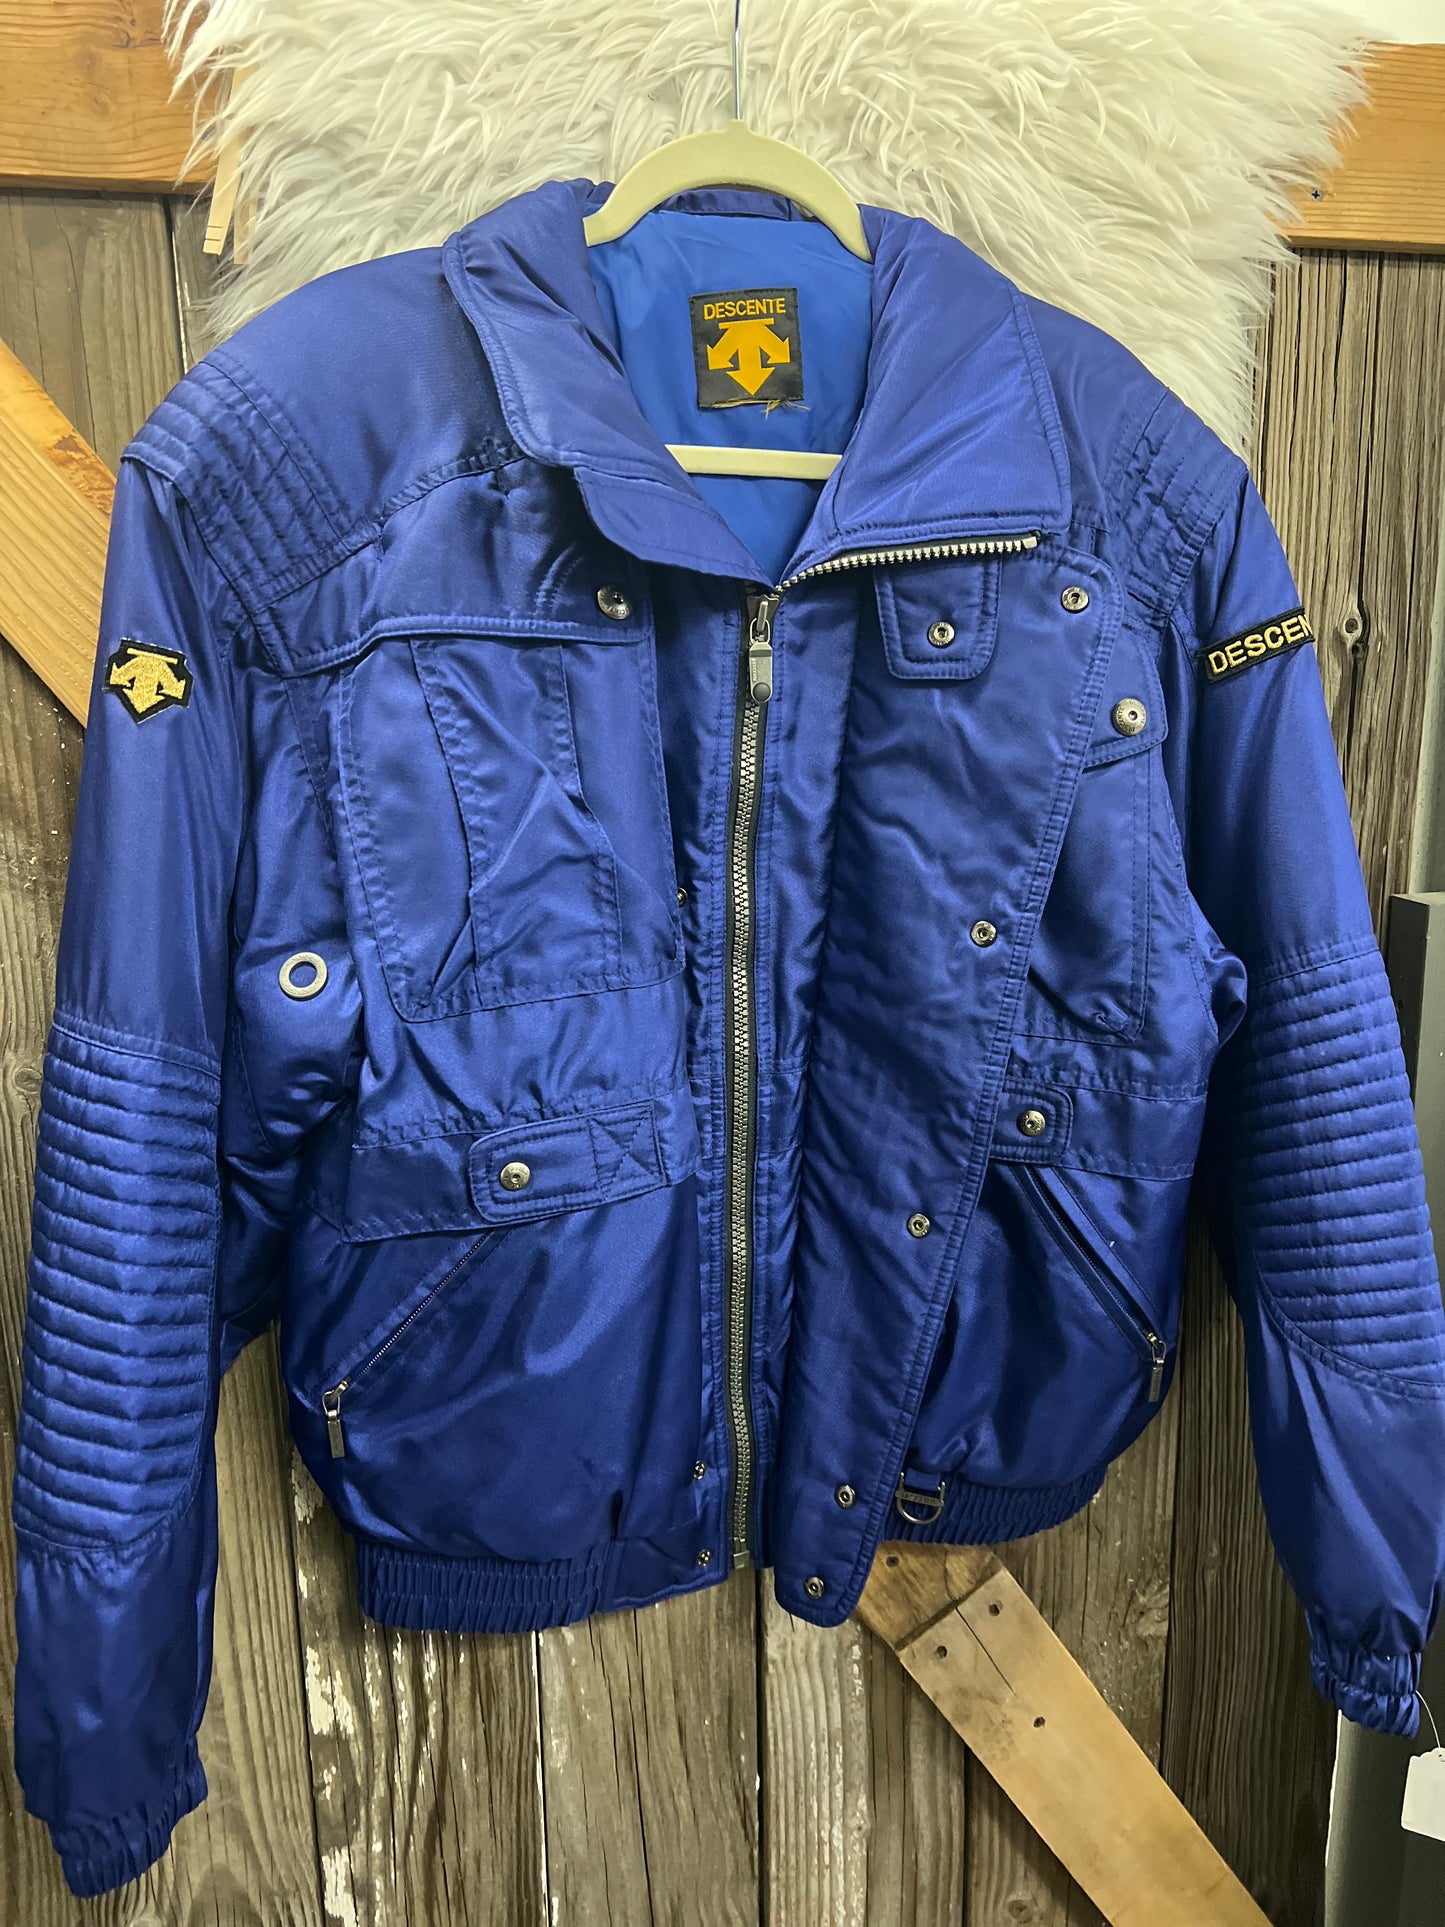 Vintage Descente Ski Jacket